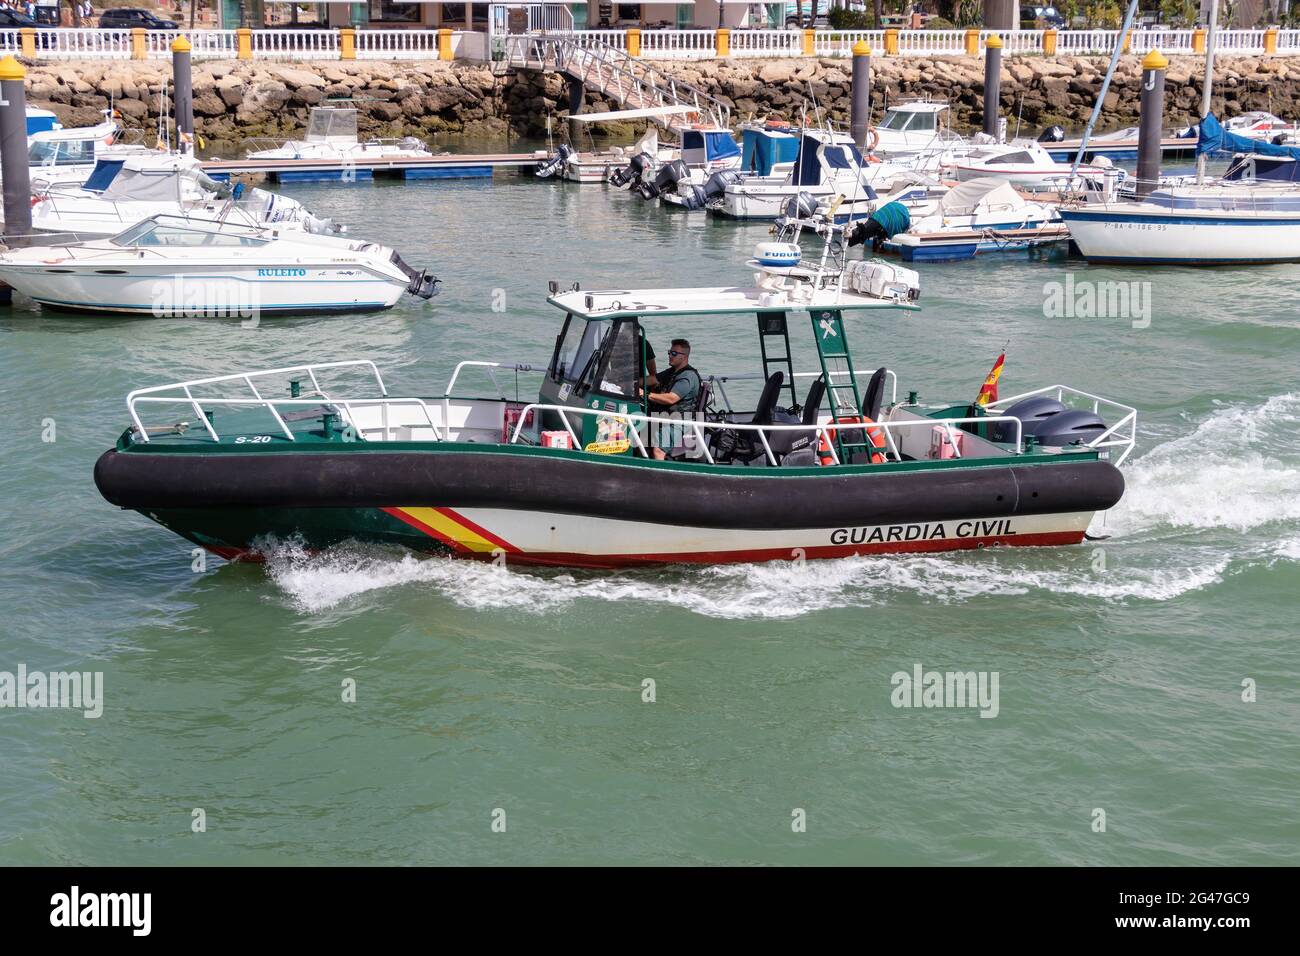 El Puerto de Santa María, Cádiz, Spanien - 16. Juni 2021: Schnellboot der Guardia Civil patrouilliert im Hafen. Staatliche Sicherheitskräfte und -Organe, Anda Stockfoto